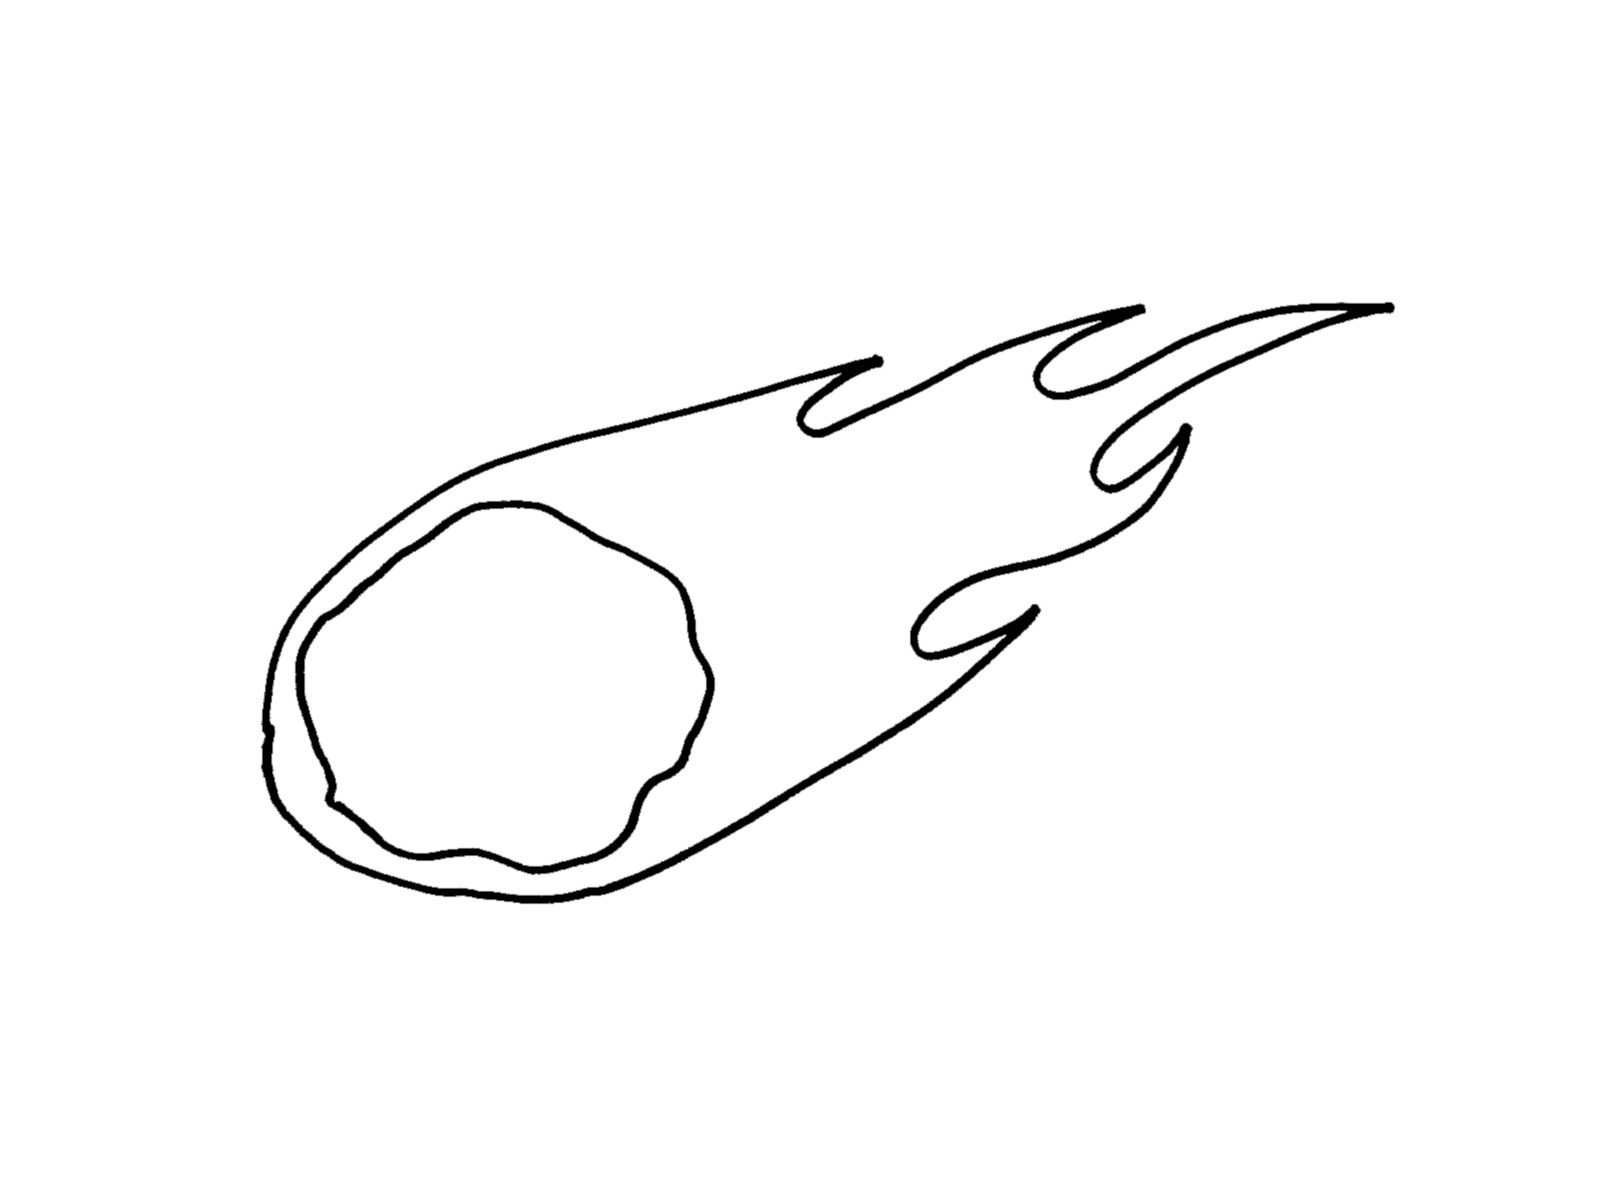 gaiss-comet-14-1600px-client-sketch